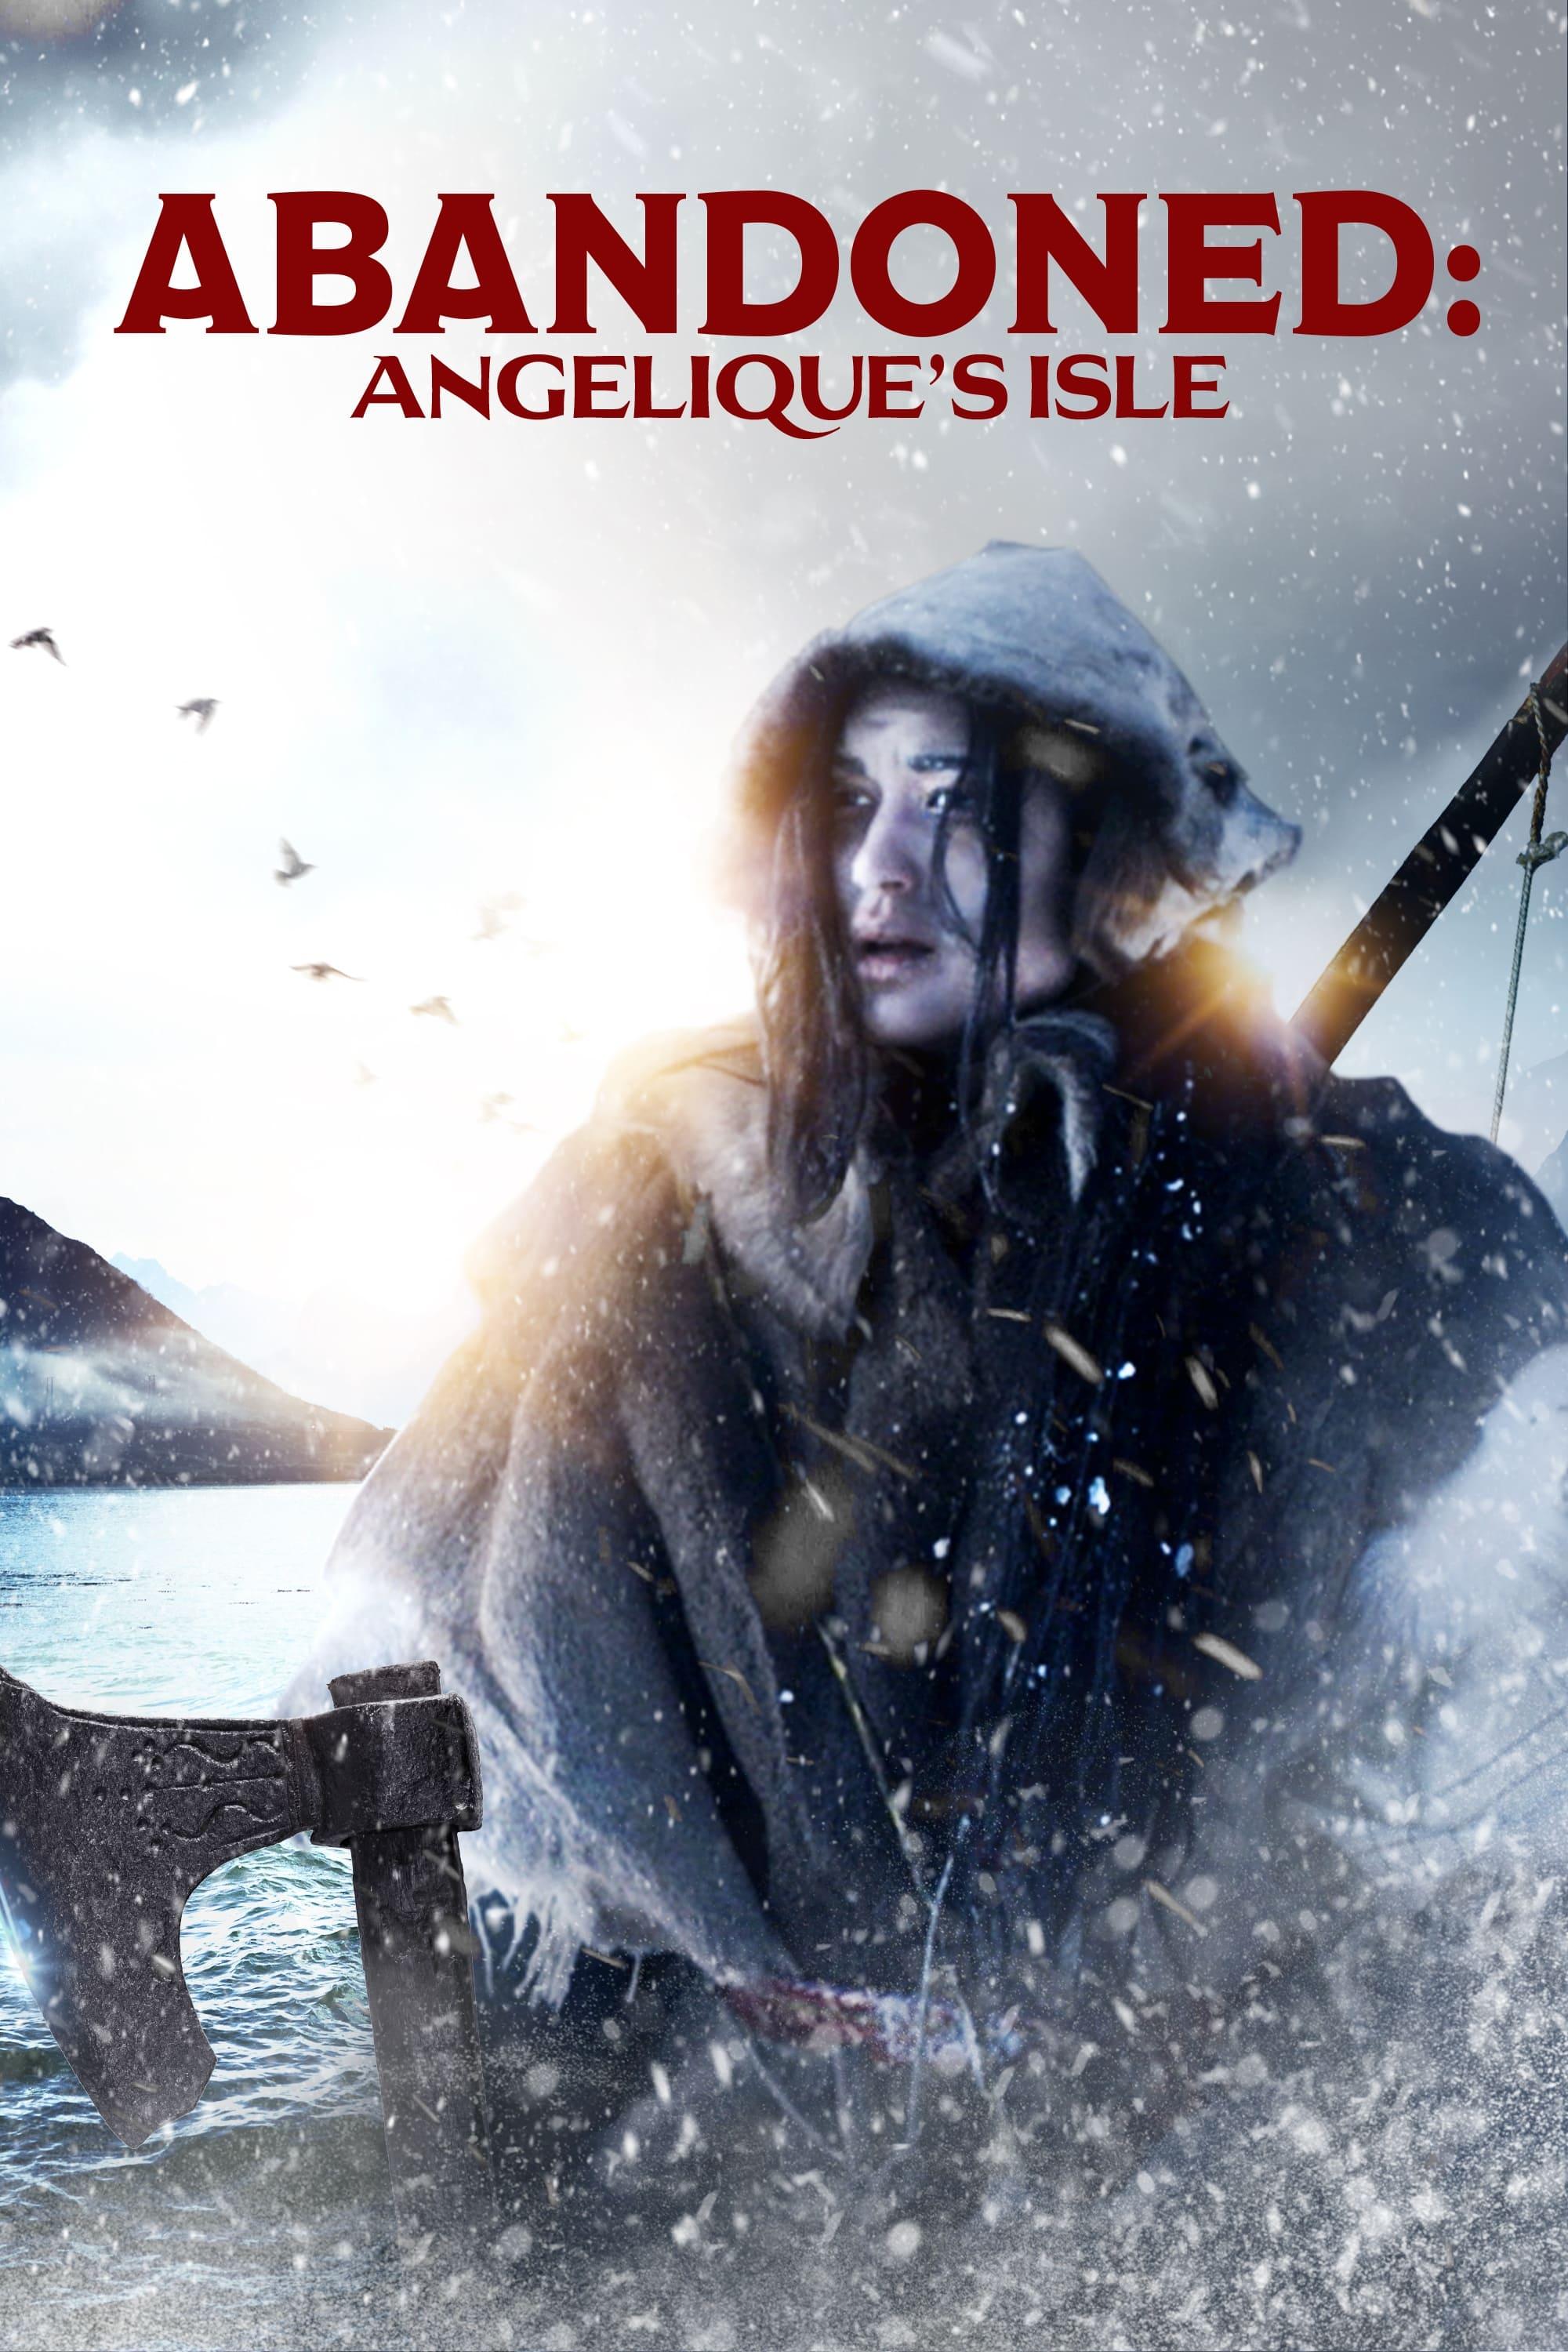 Angelique's Isle poster